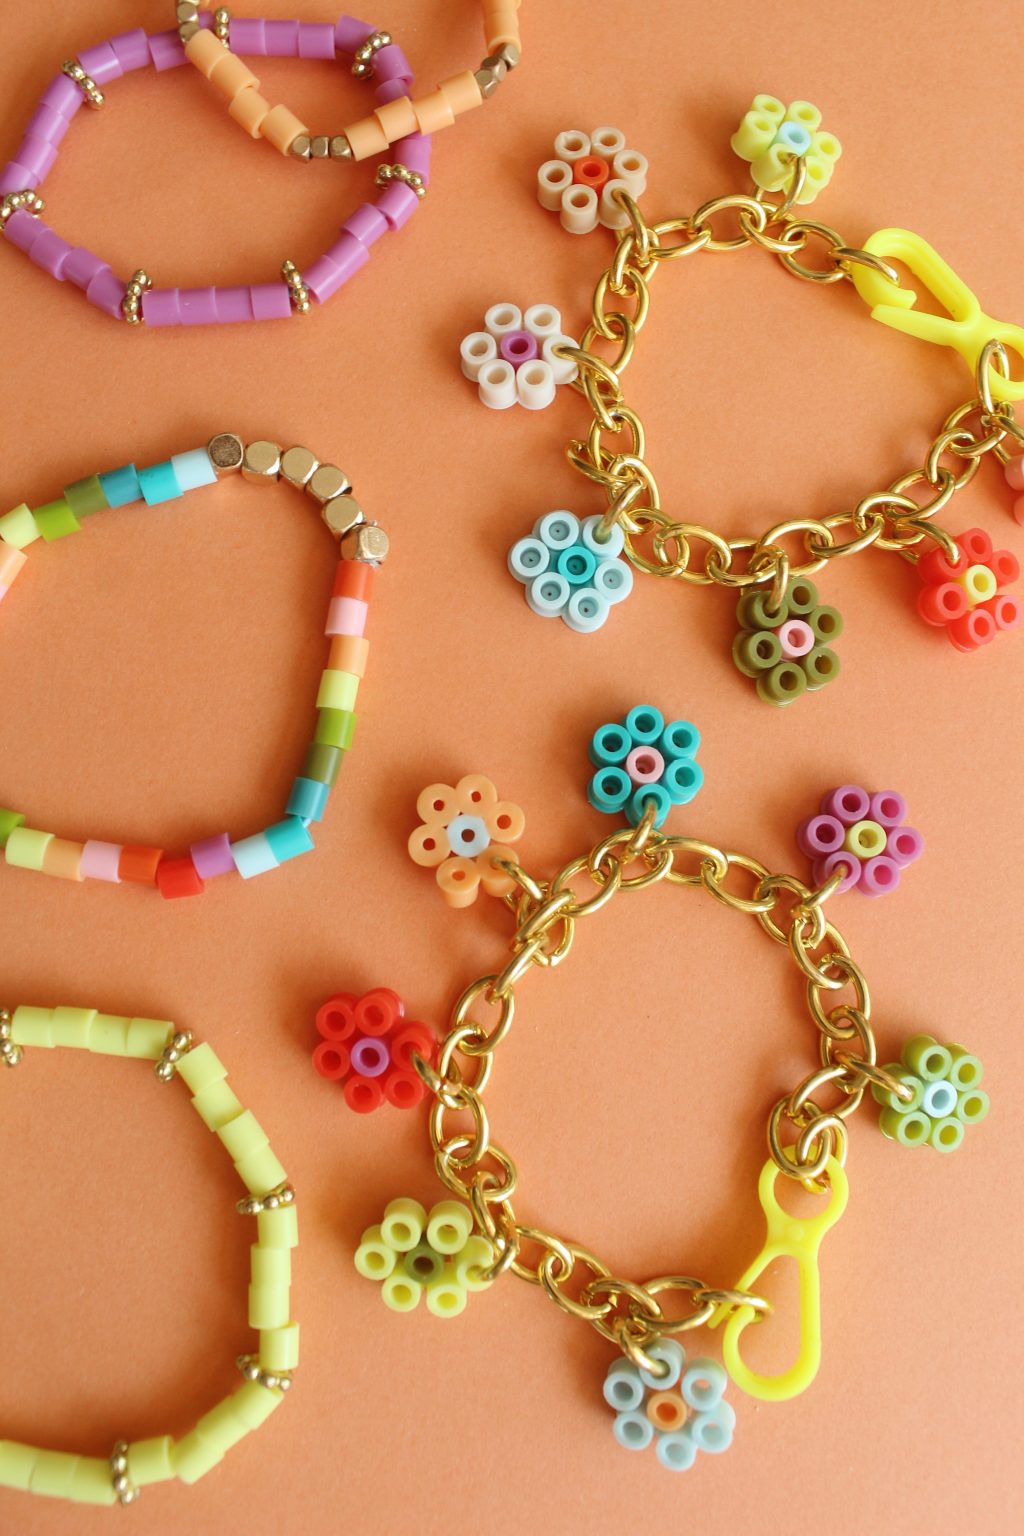 15 Handmade Summer Jewelry Ideas